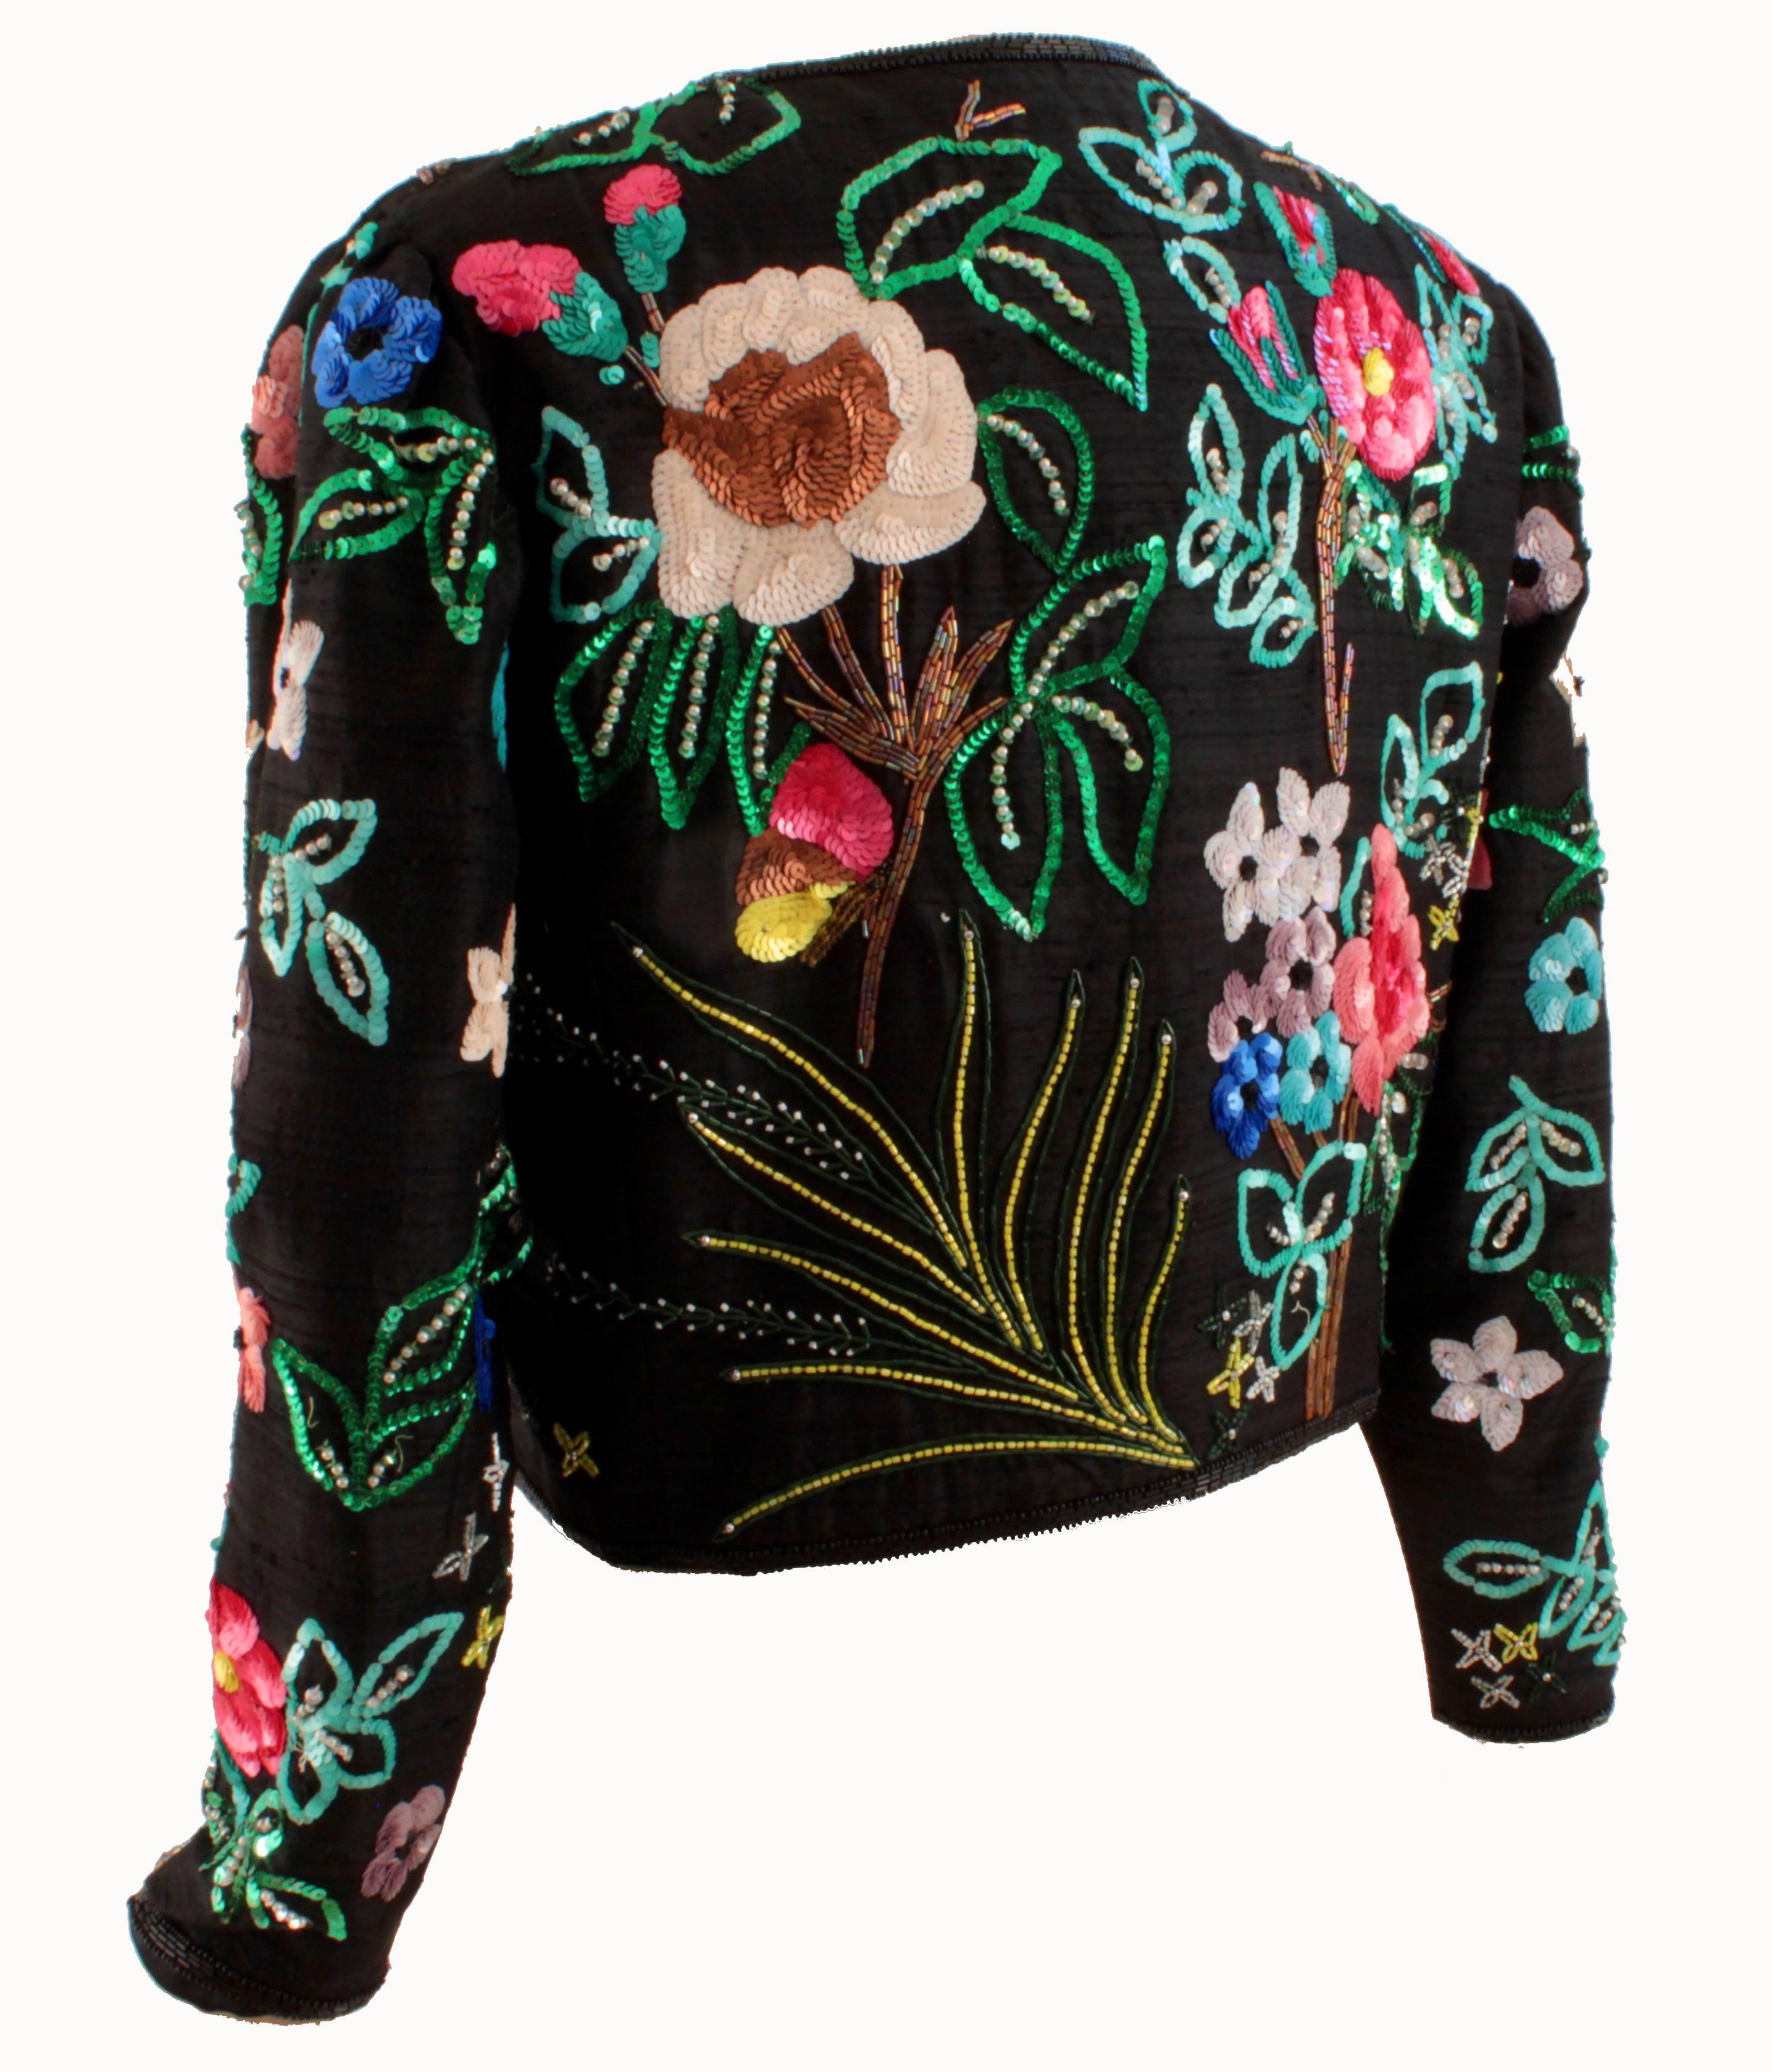 Black Jeanette Kastenberg St Martin Floral Sequins Bolero Evening Jacket, 1980s